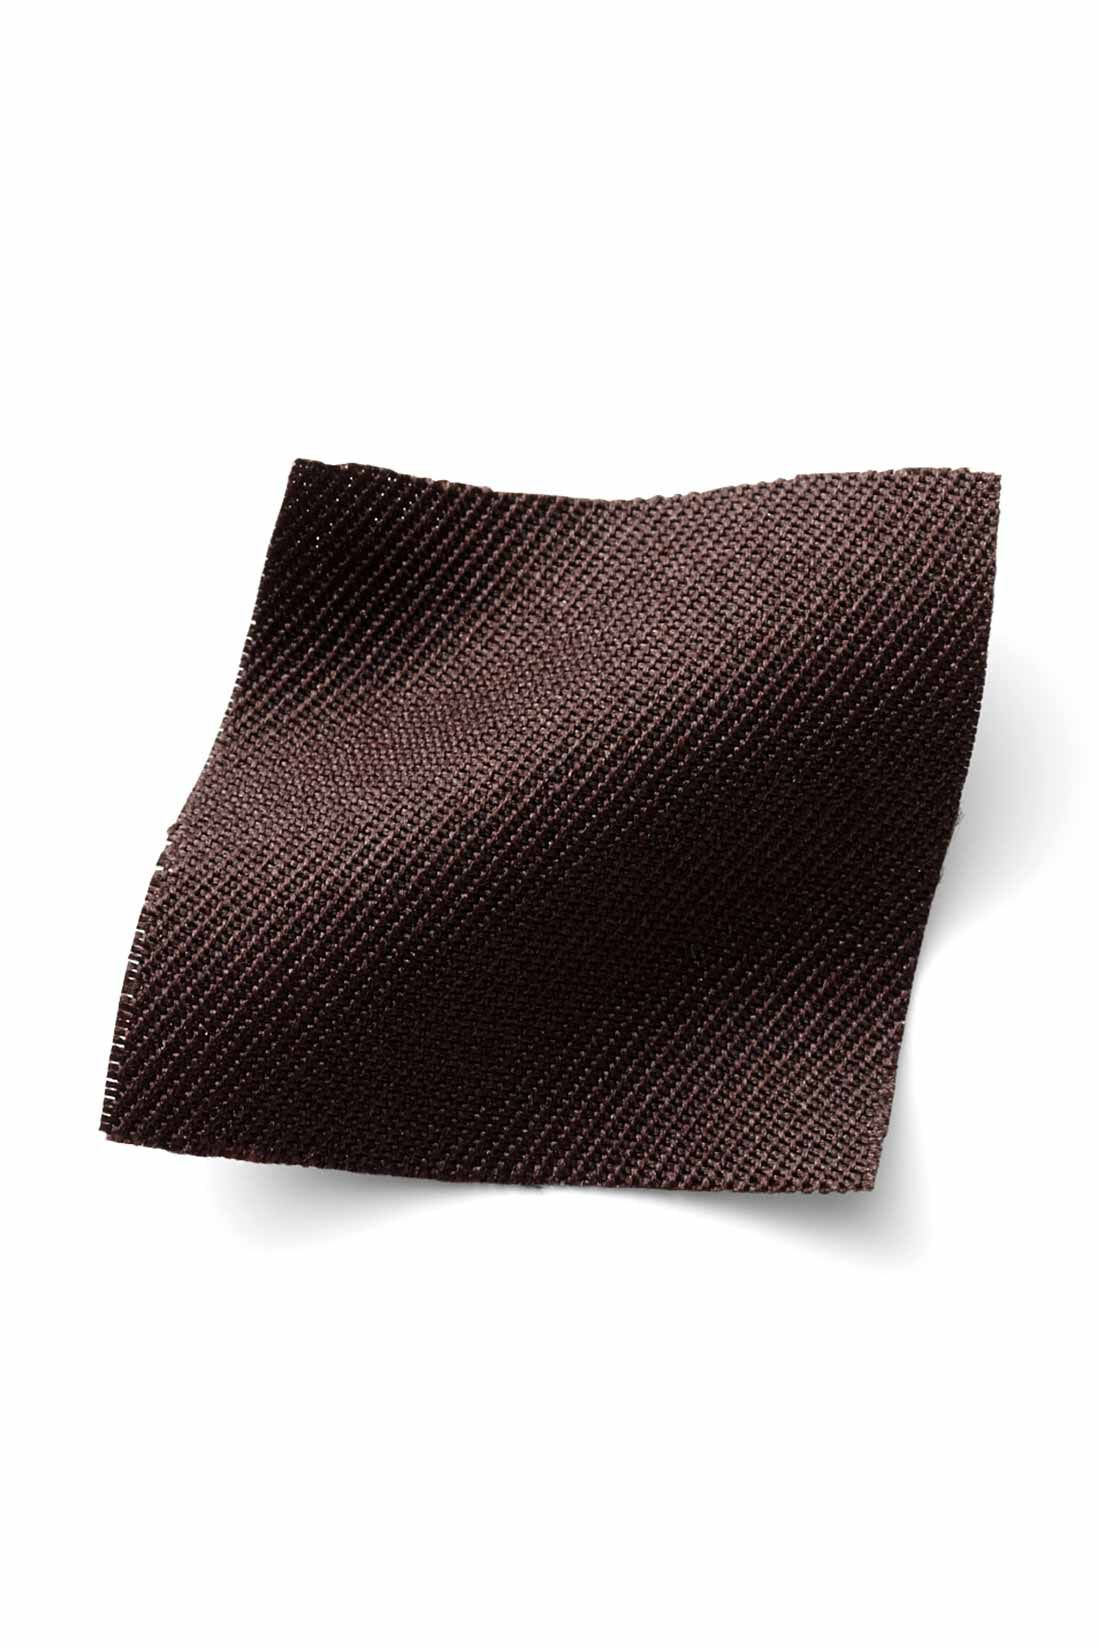 IEDIT|IEDIT[イディット]　着まわし広がる 2-WAY仕様がうれしい大人シルエットのジャンパースカート〈ブラウン〉|季節を問わずはきやすい、ほどよい厚みの布はく素材。 ※お届けするカラーとは異なります。